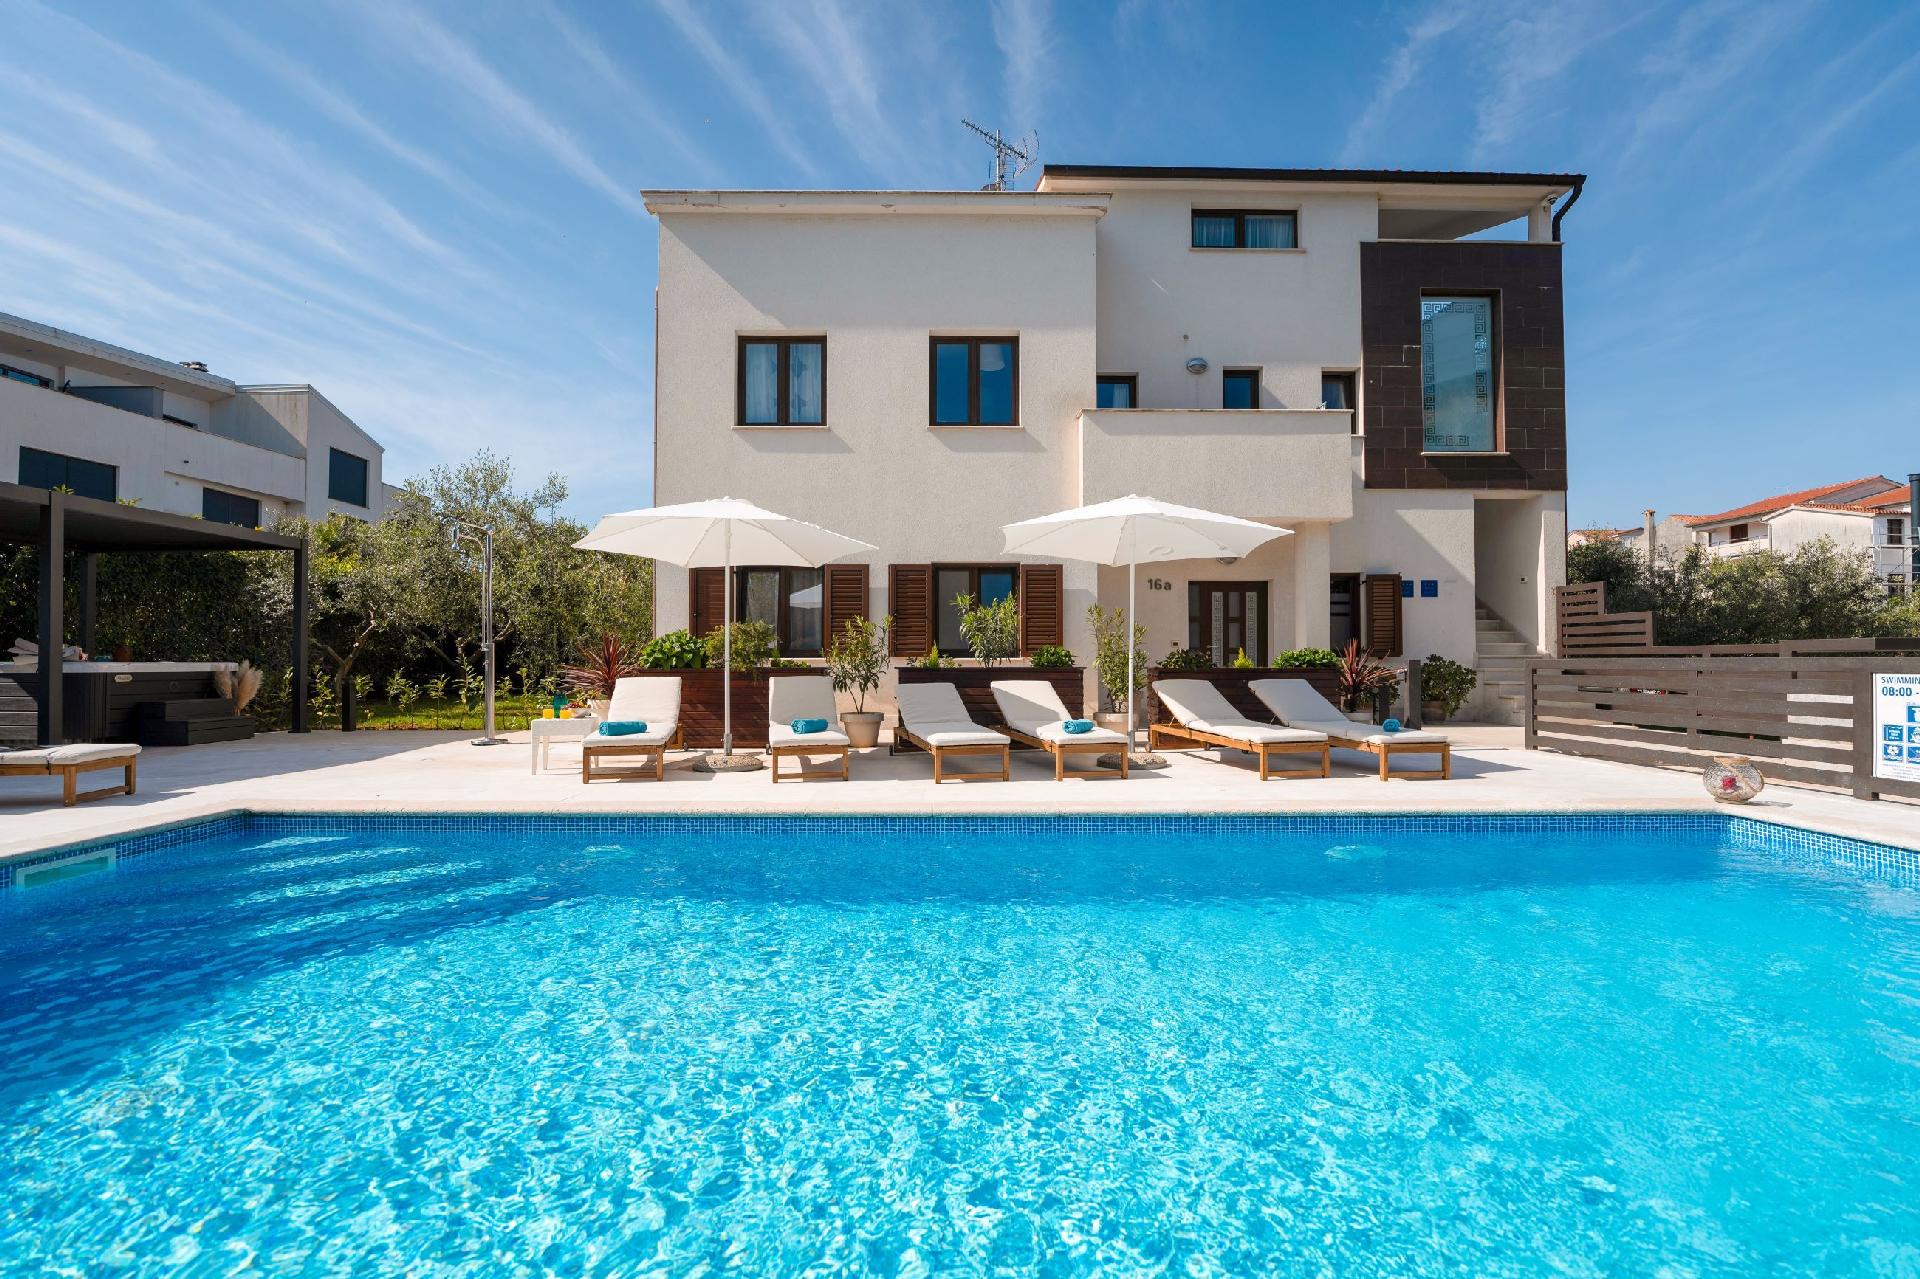 Ferienwohnung Residence Mala 1 mit Pool   Ferienwohnung in Kroatien